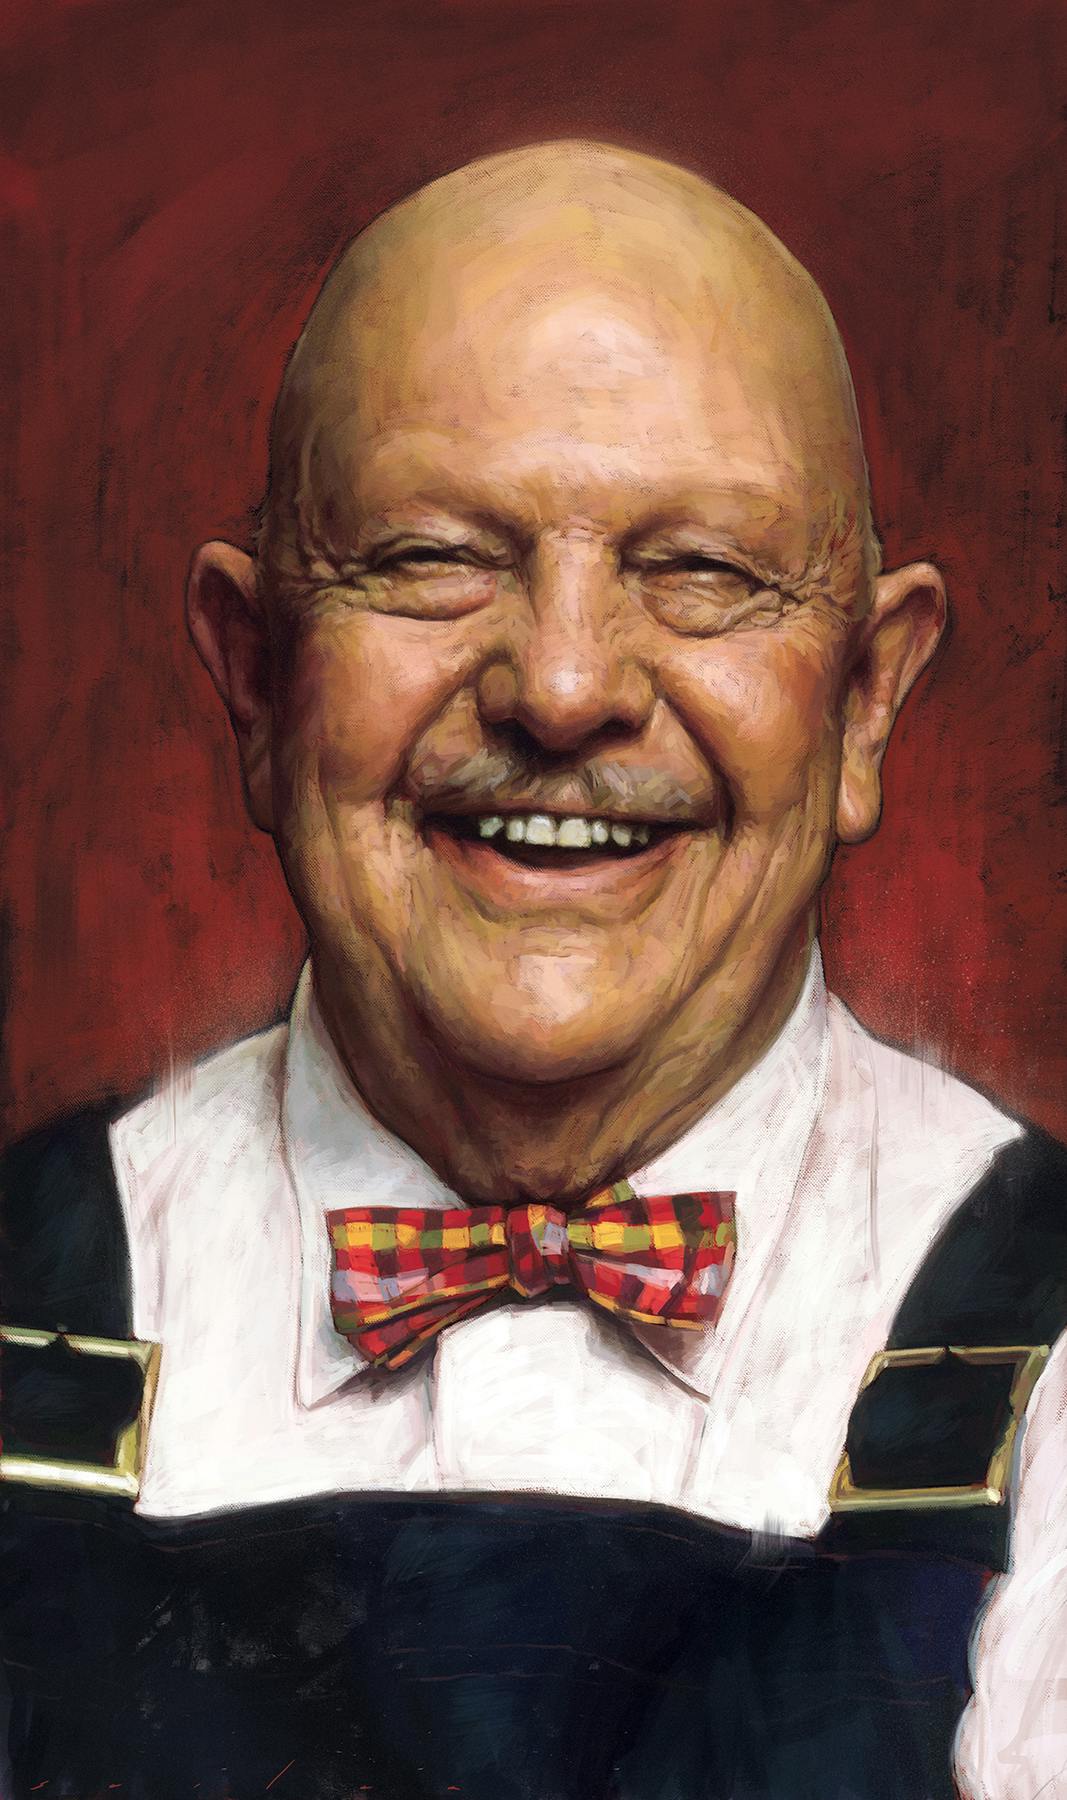 A portrait of a smiling man